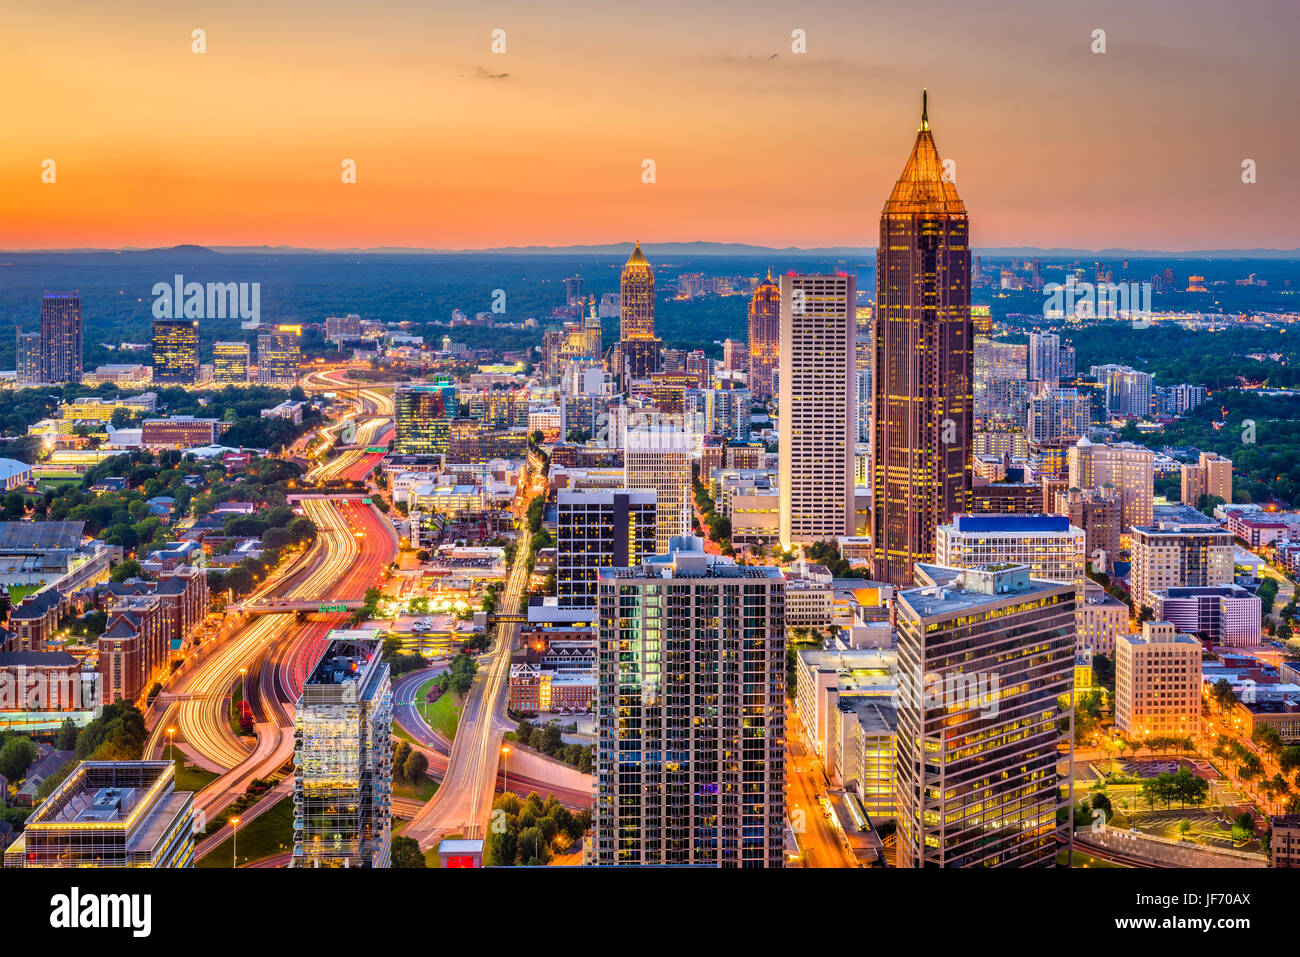 Atlanta, Georgia, USA downtown skyline at dusk. Stock Photo